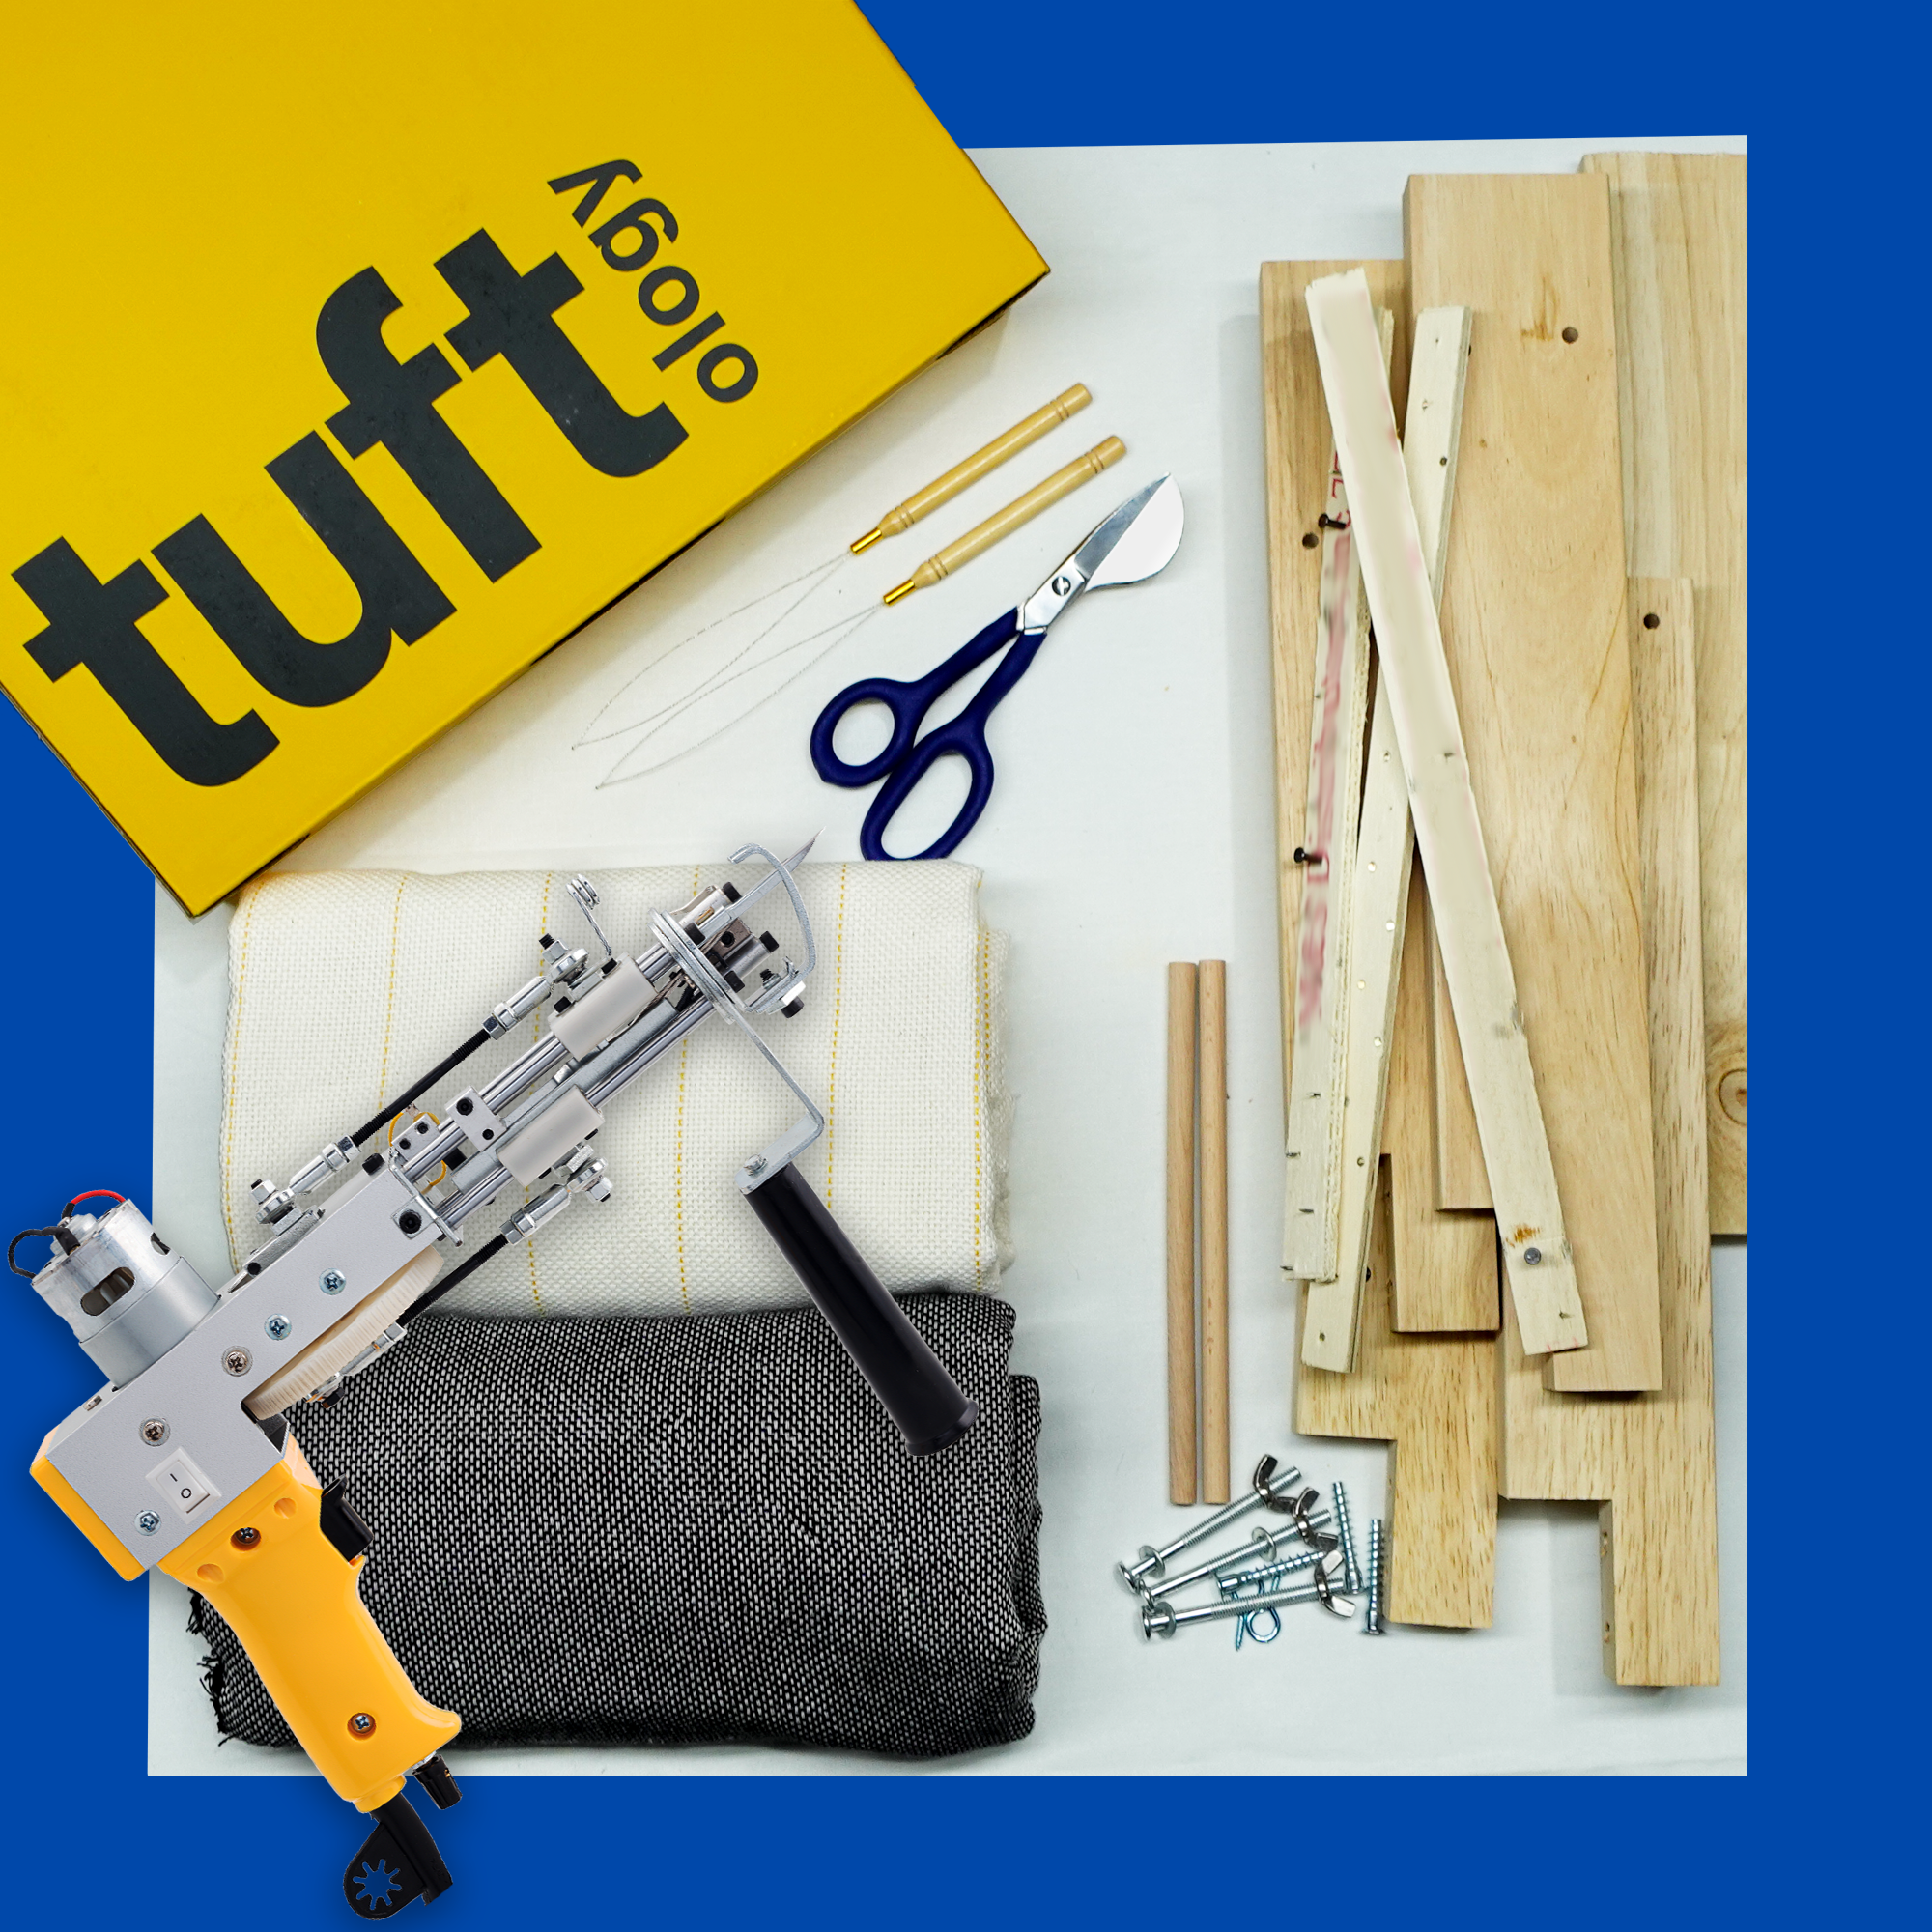 Tufting Gun Kit - Cut Pile Tufting Gun Kit,Rug Tufting Gun Machine Starter  Kit 2